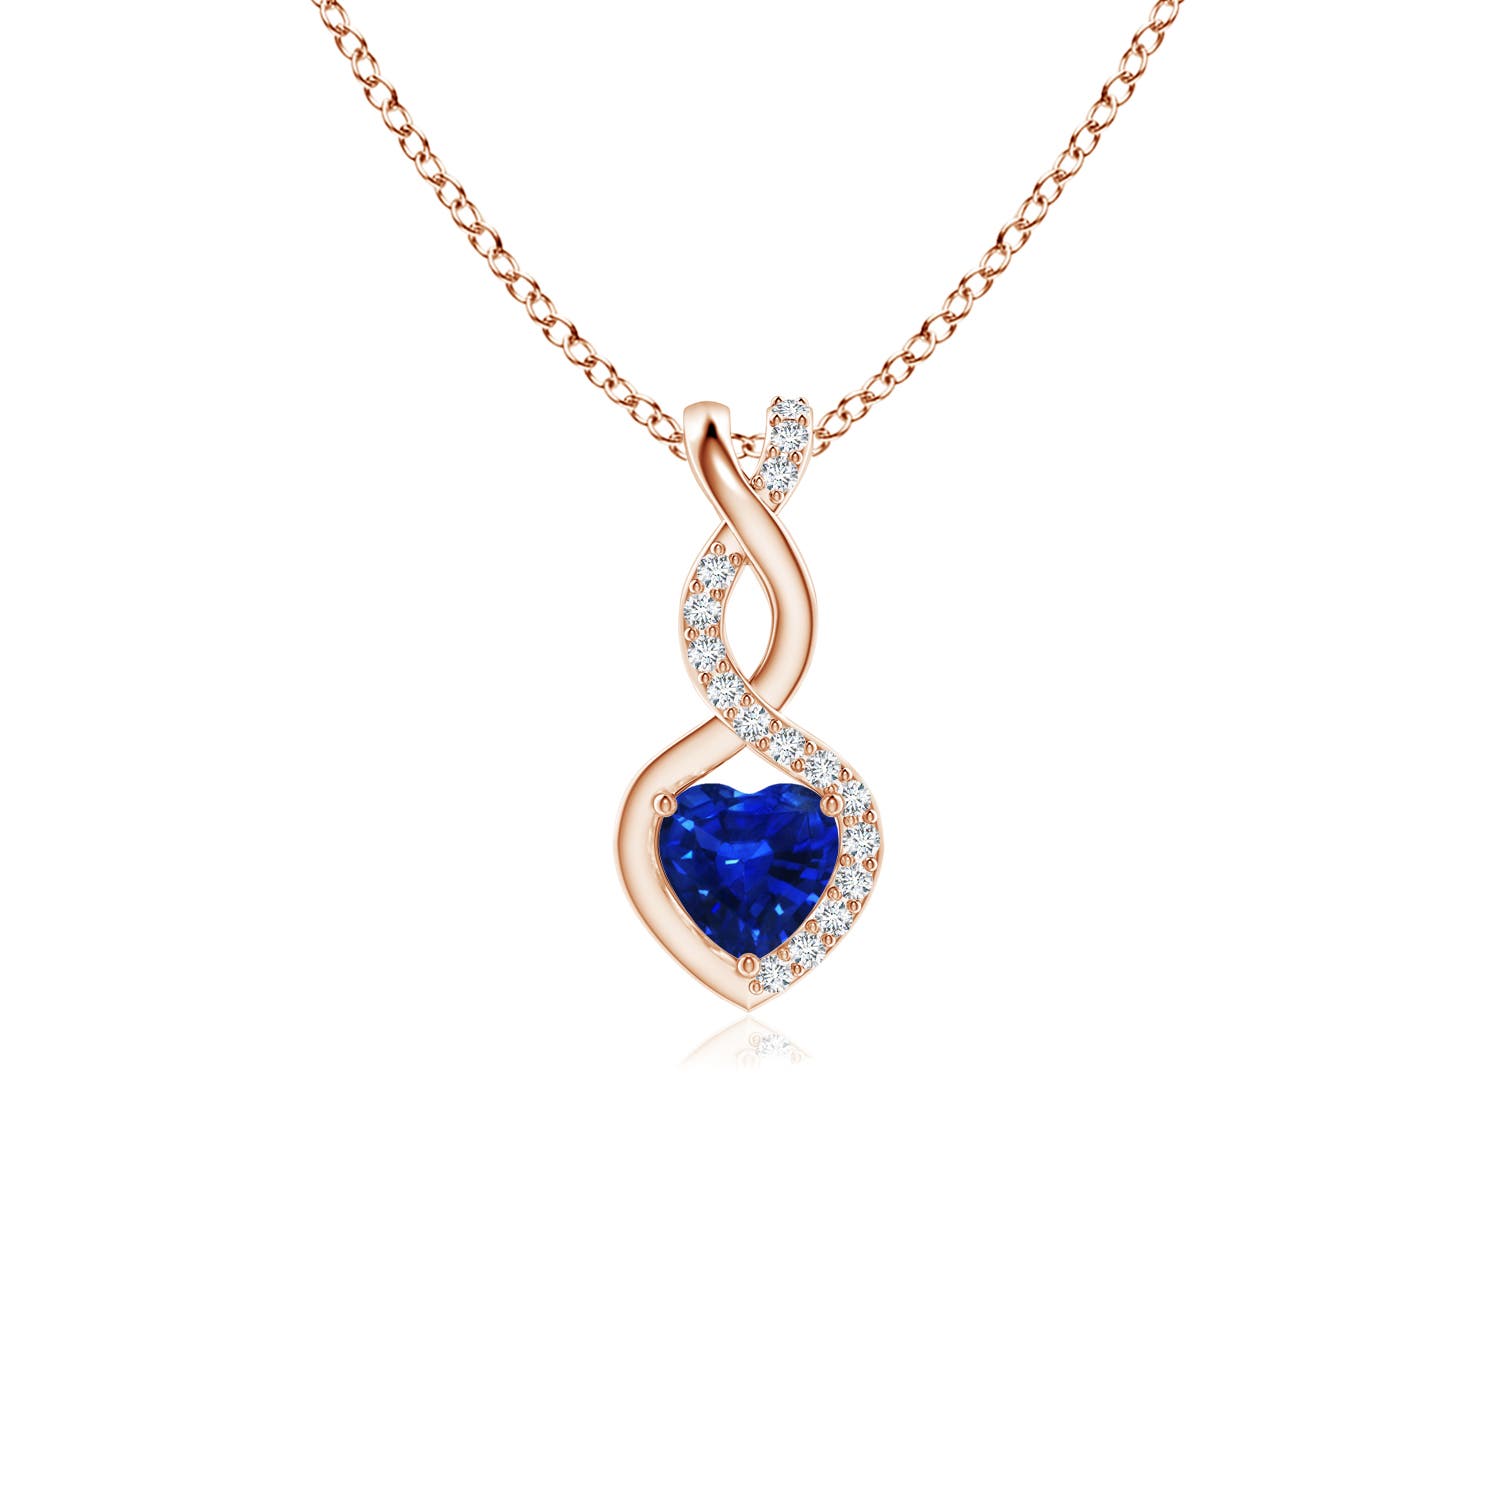 AAAA - Blue Sapphire / 0.35 CT / 14 KT Rose Gold